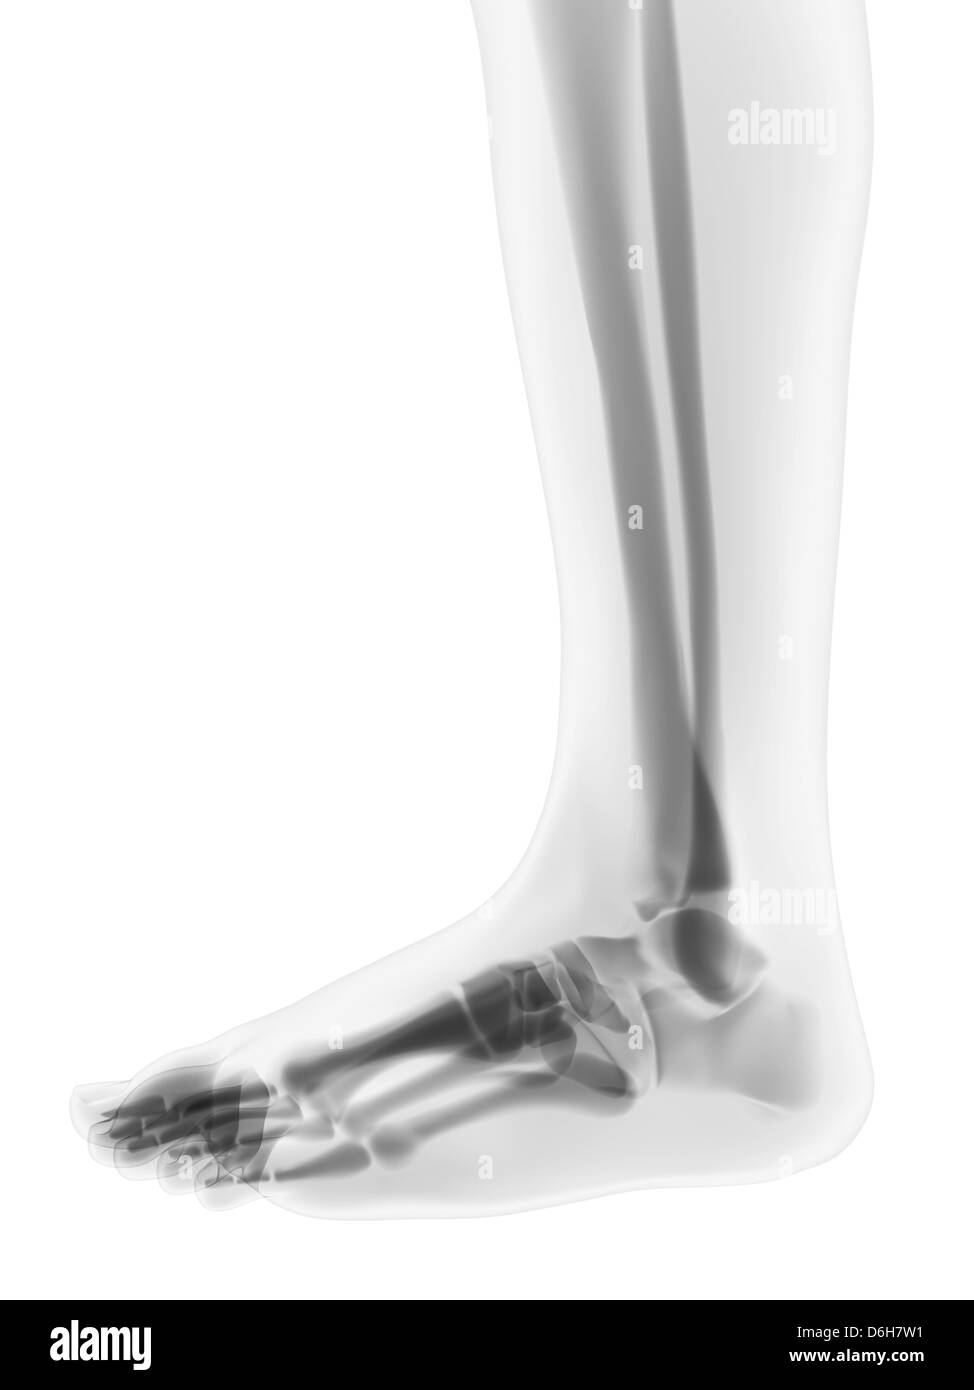 Foot bones, artwork Stock Photo